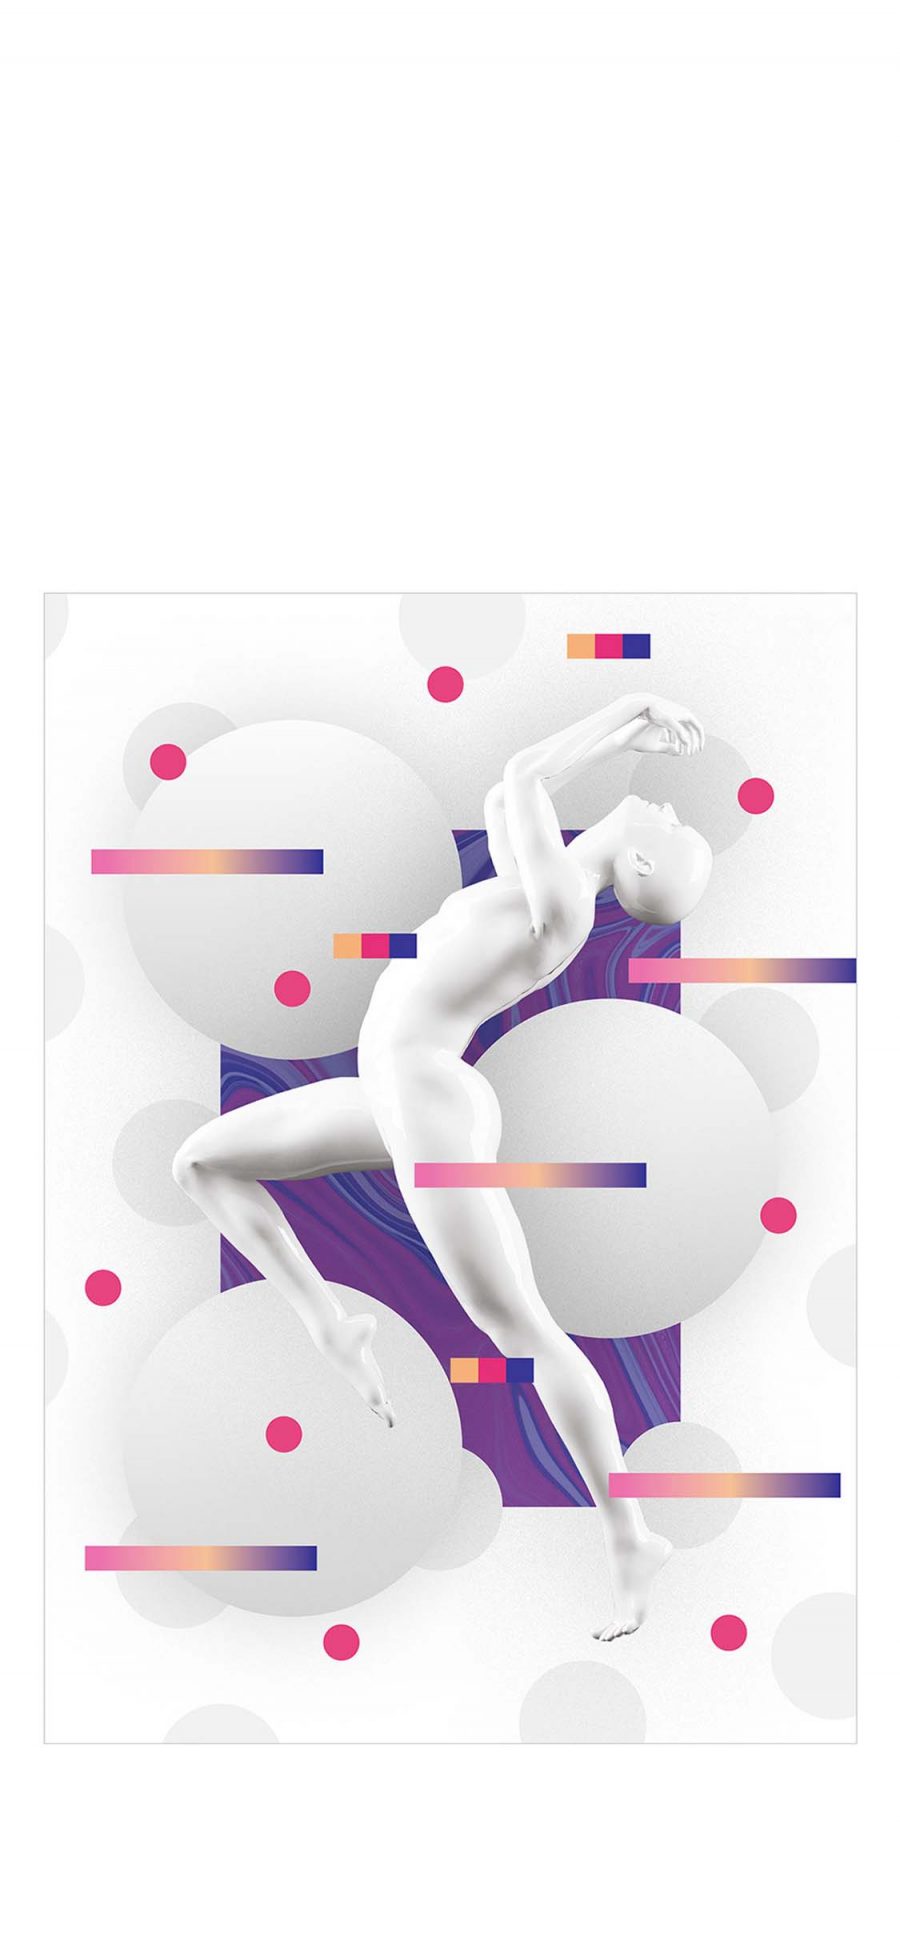 [2436×1125]雕像 封面 设计 白色 球体 苹果手机动漫壁纸图片